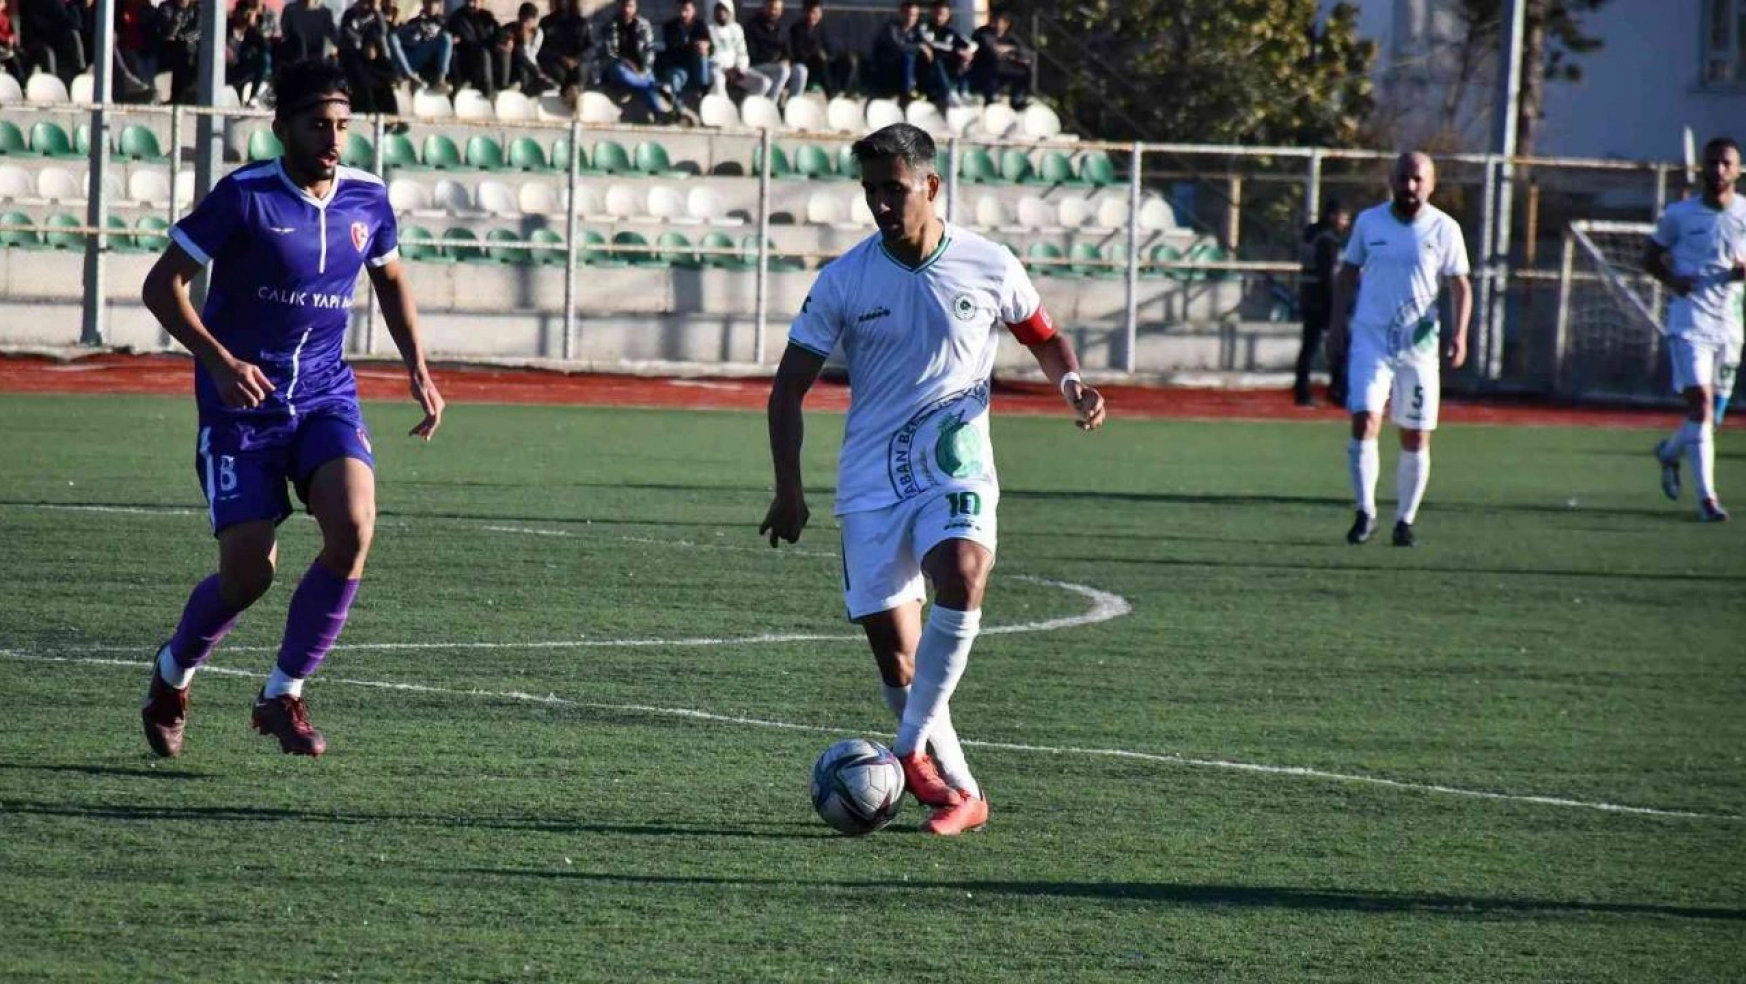 Araban Belediyespor Adana Hıdırlıgücü Spor'u 3-0 Mağlup Etti